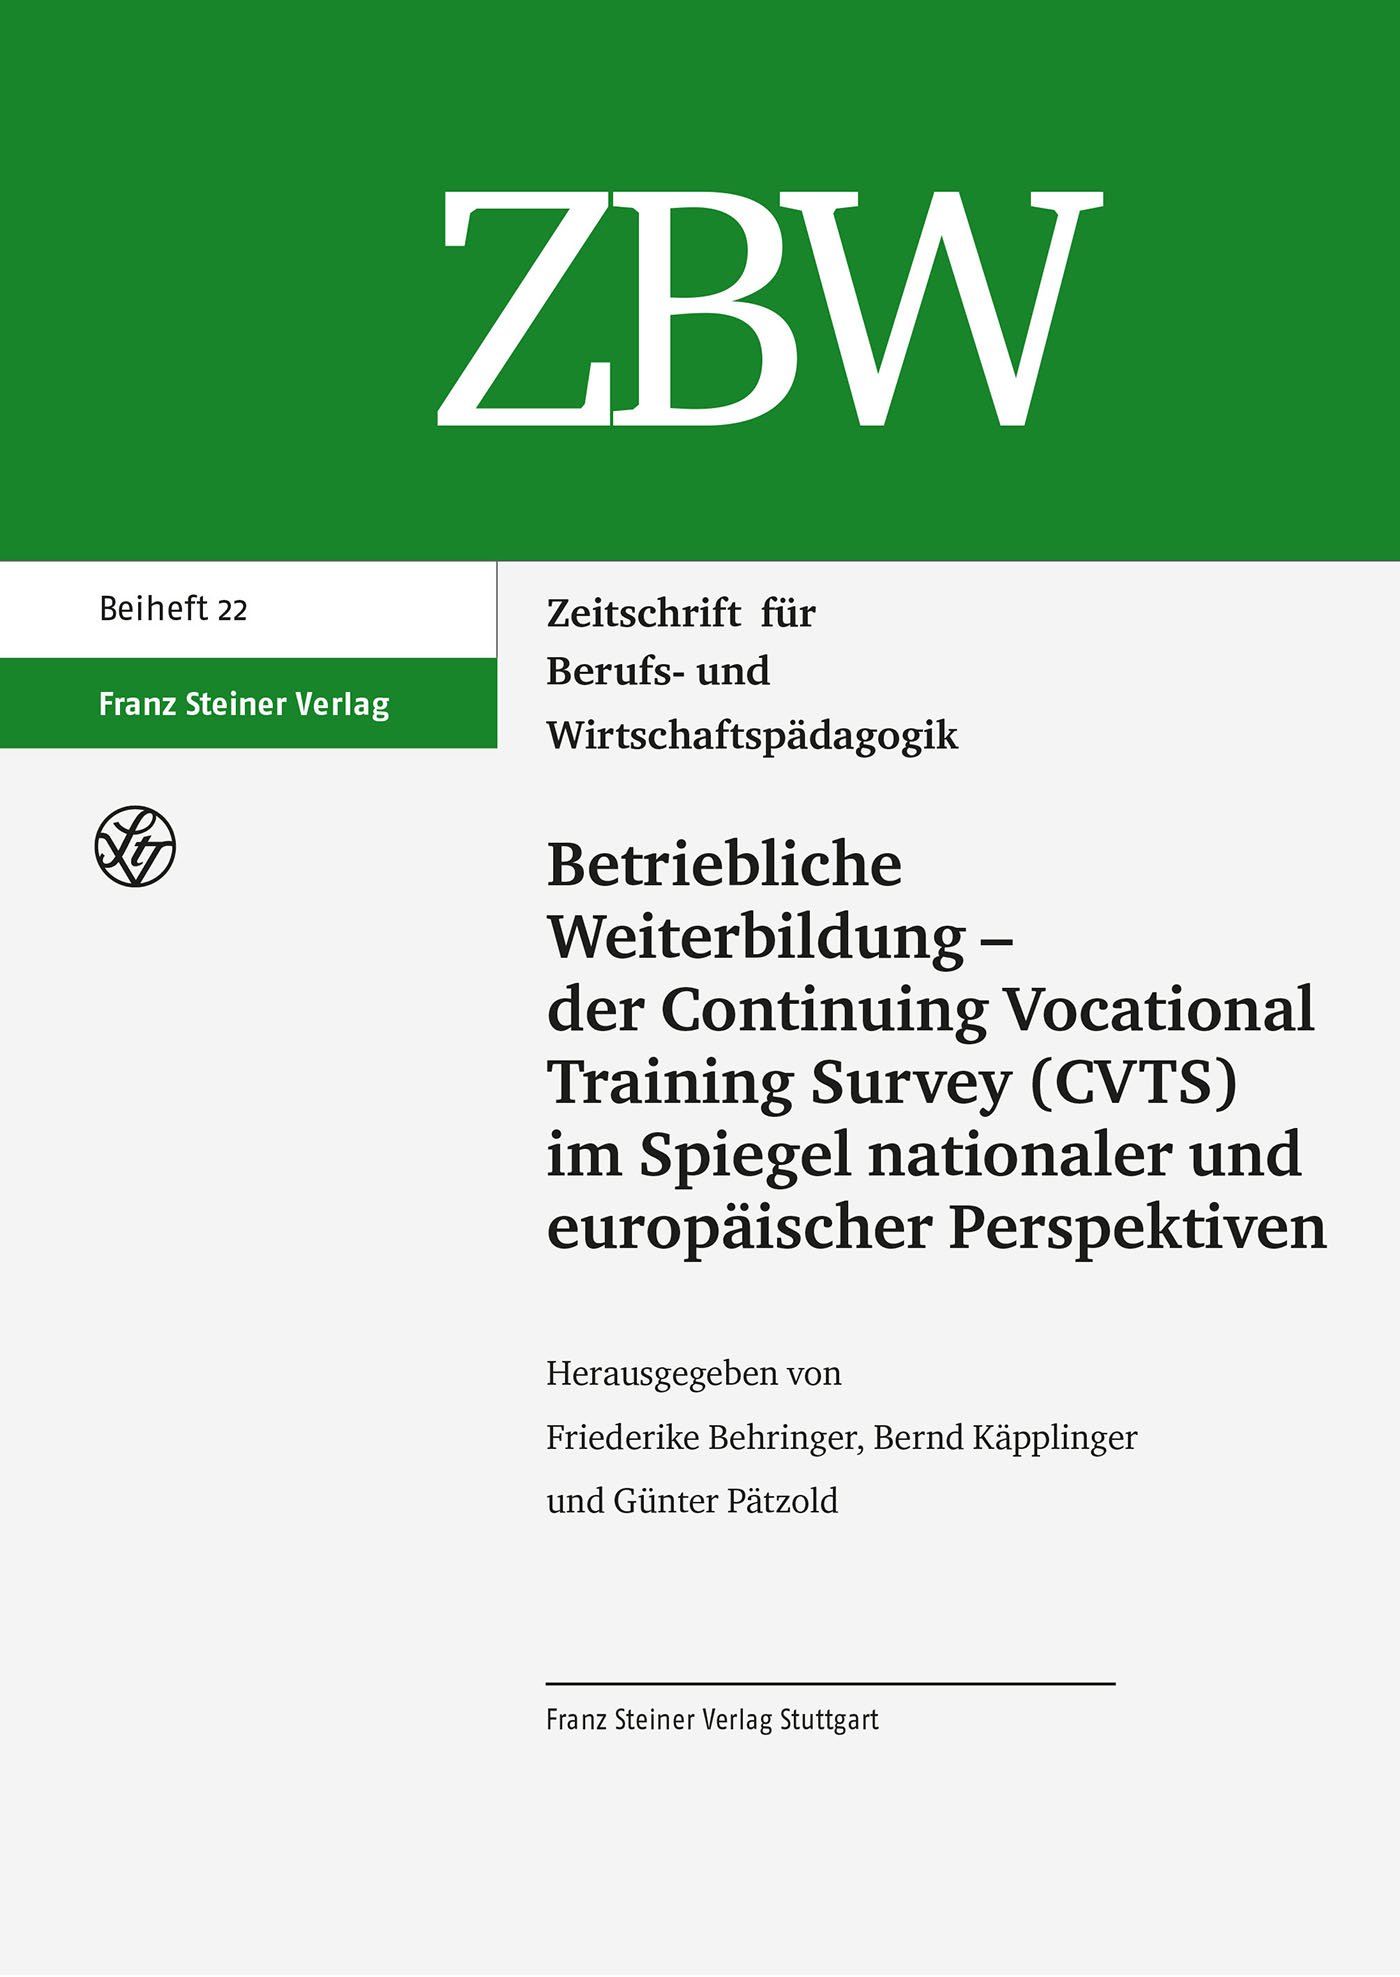 Betriebliche Weiterbildung – der Continuing Vocational Training Survey (CVTS) im Spiegel nationaler und europäischer Perspektiven